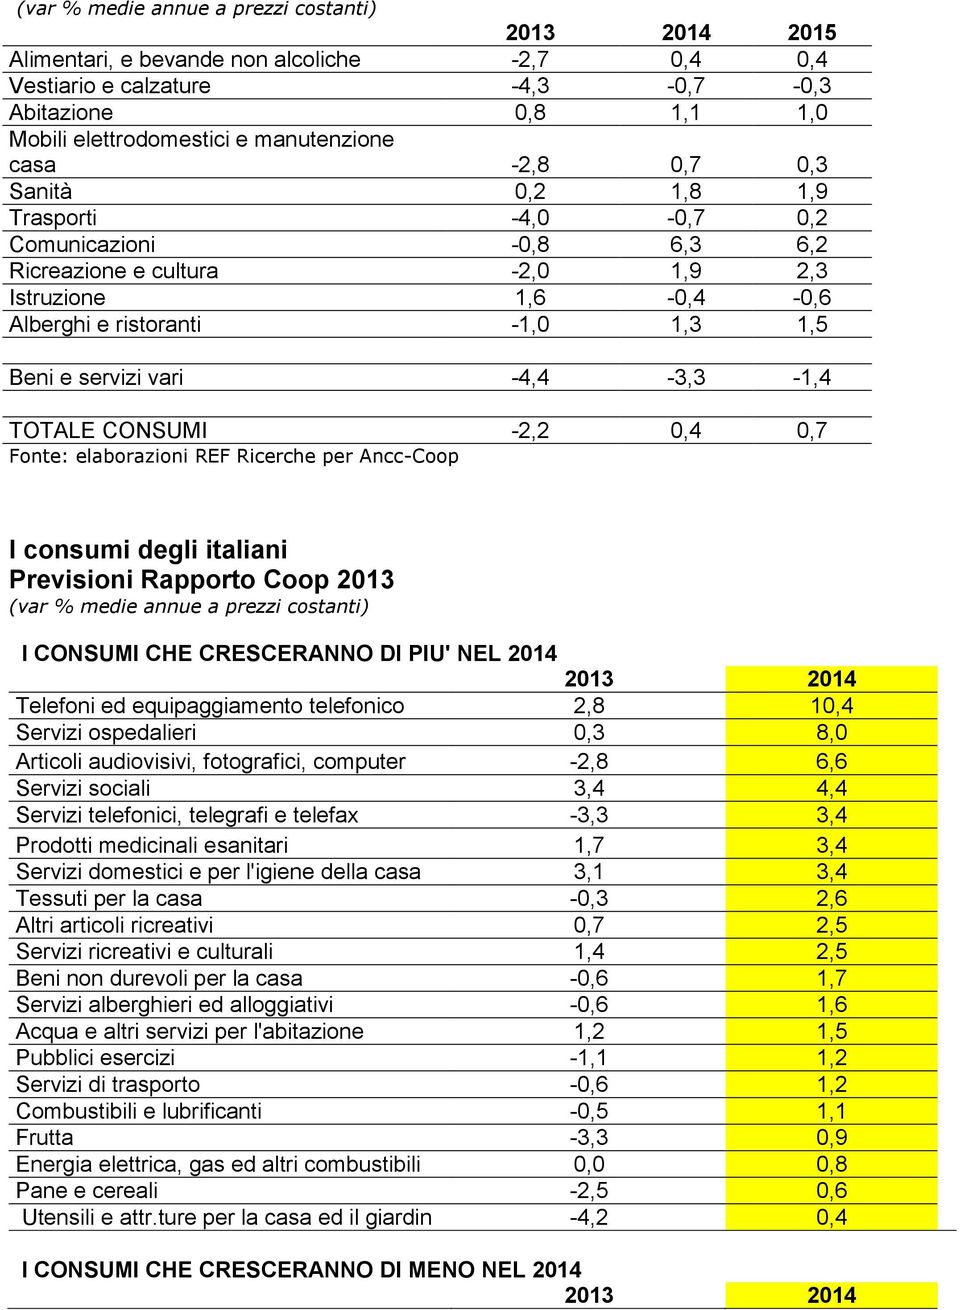 -4,4-3,3-1,4 TOTALE CONSUMI -2,2 0,4 0,7 Fonte: elaborazioni REF Ricerche per Ancc-Coop I consumi degli italiani (var % medie annue a prezzi costanti) I CONSUMI CHE CRESCERANNO DI PIU' NEL 2014 2013